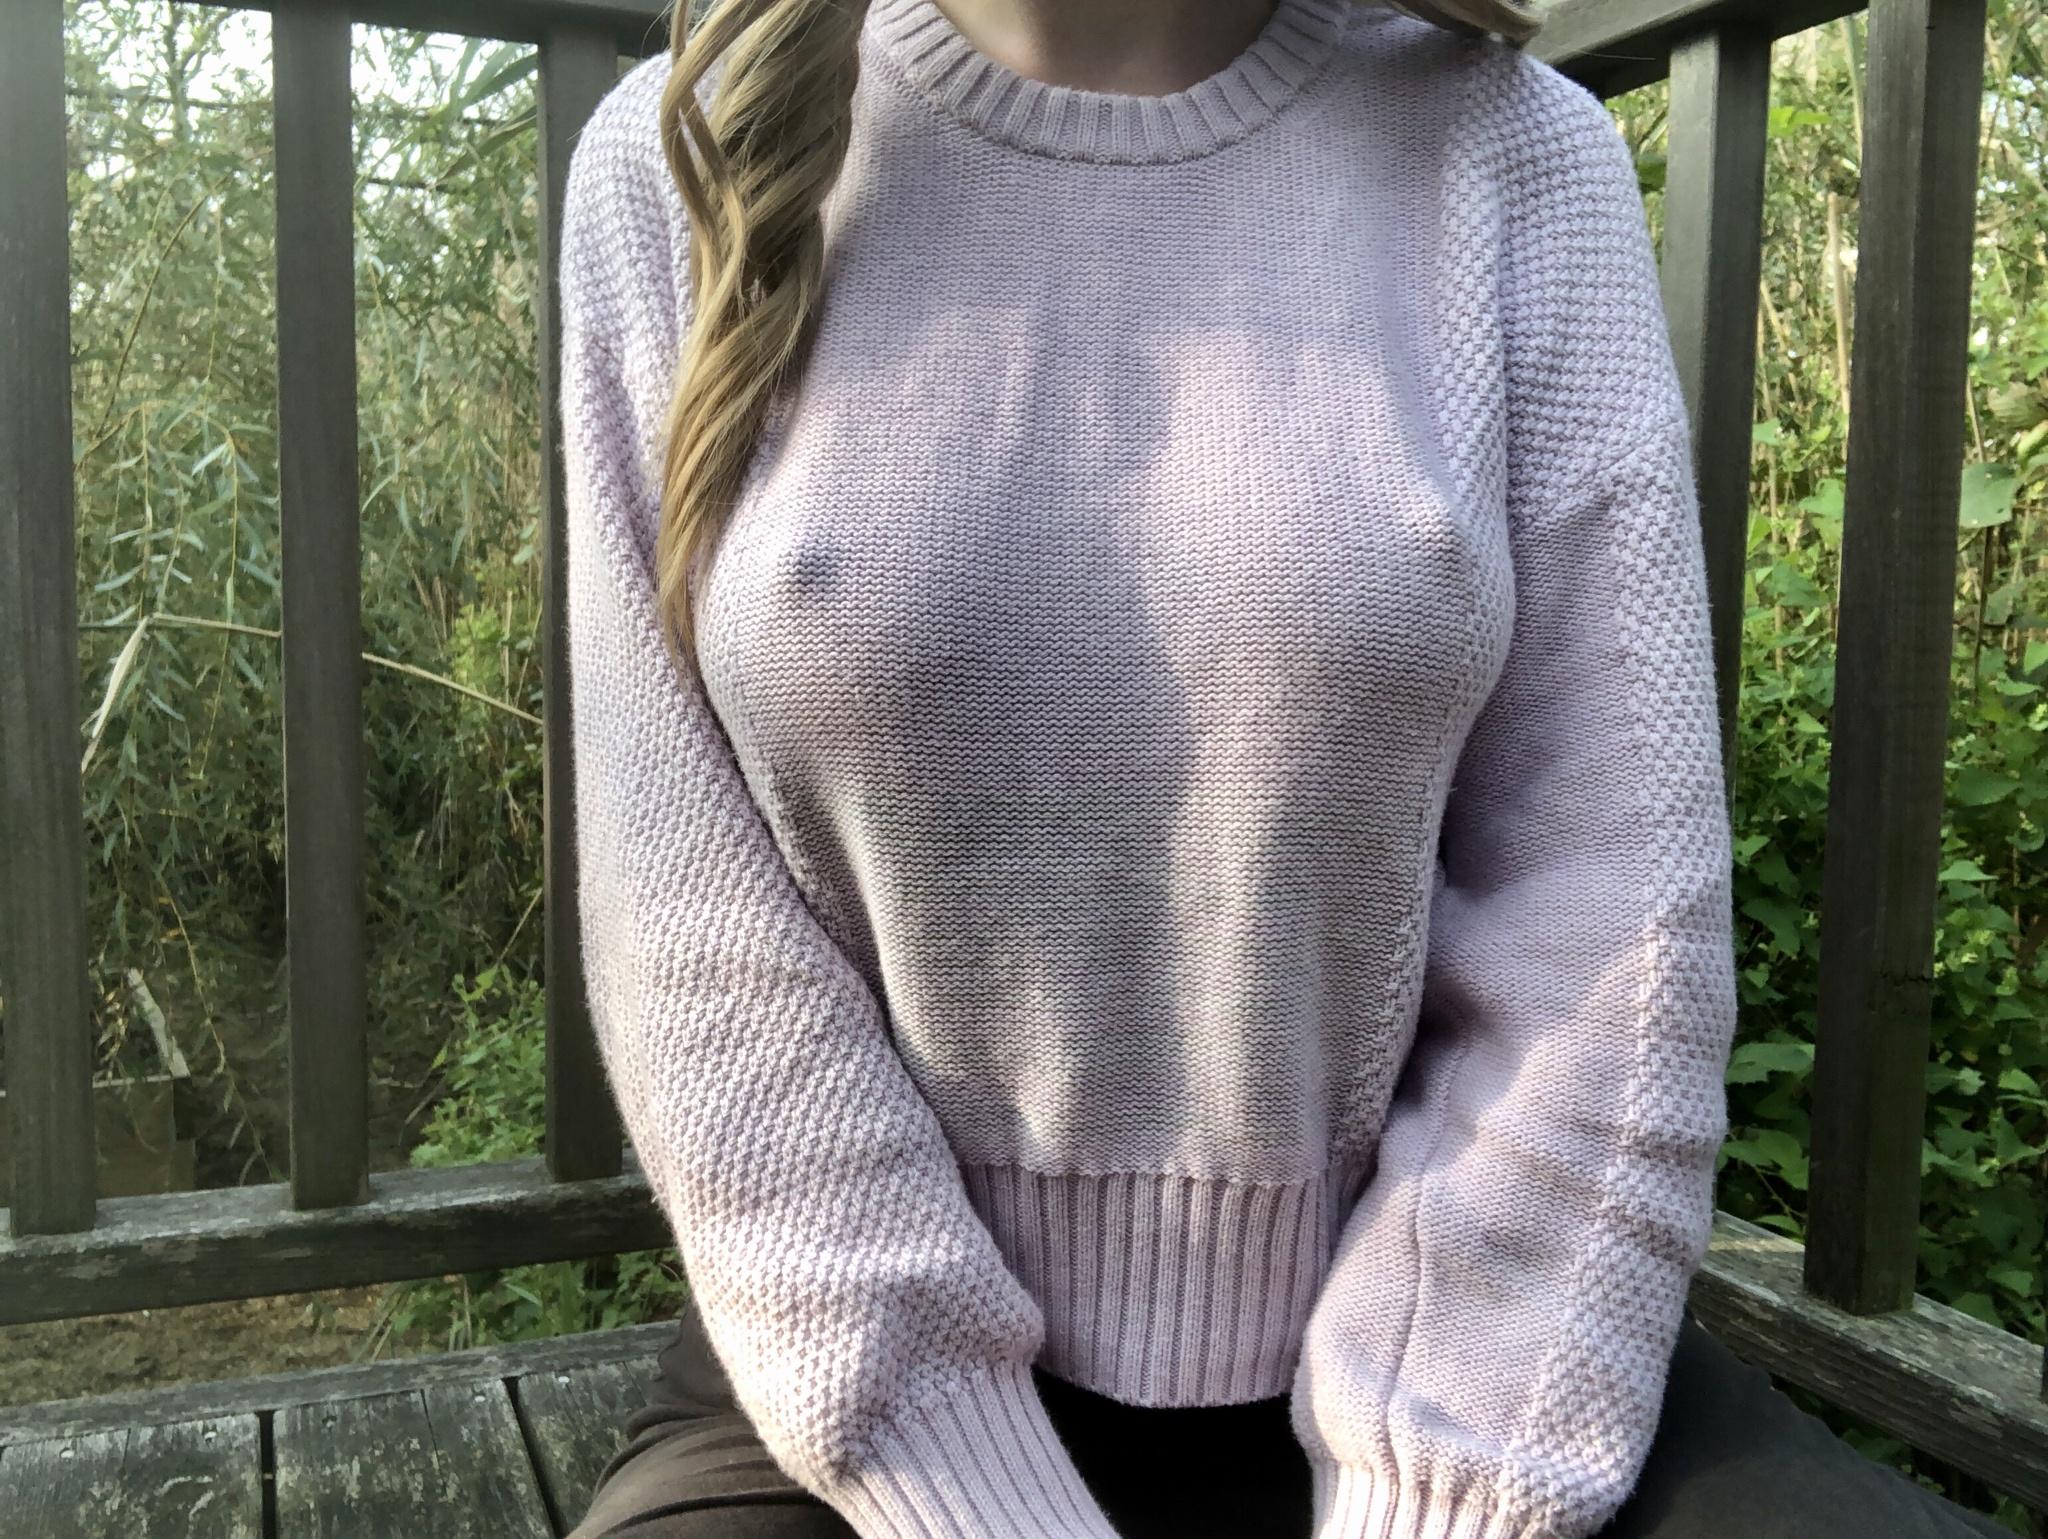 amateur models wearing sweater bras